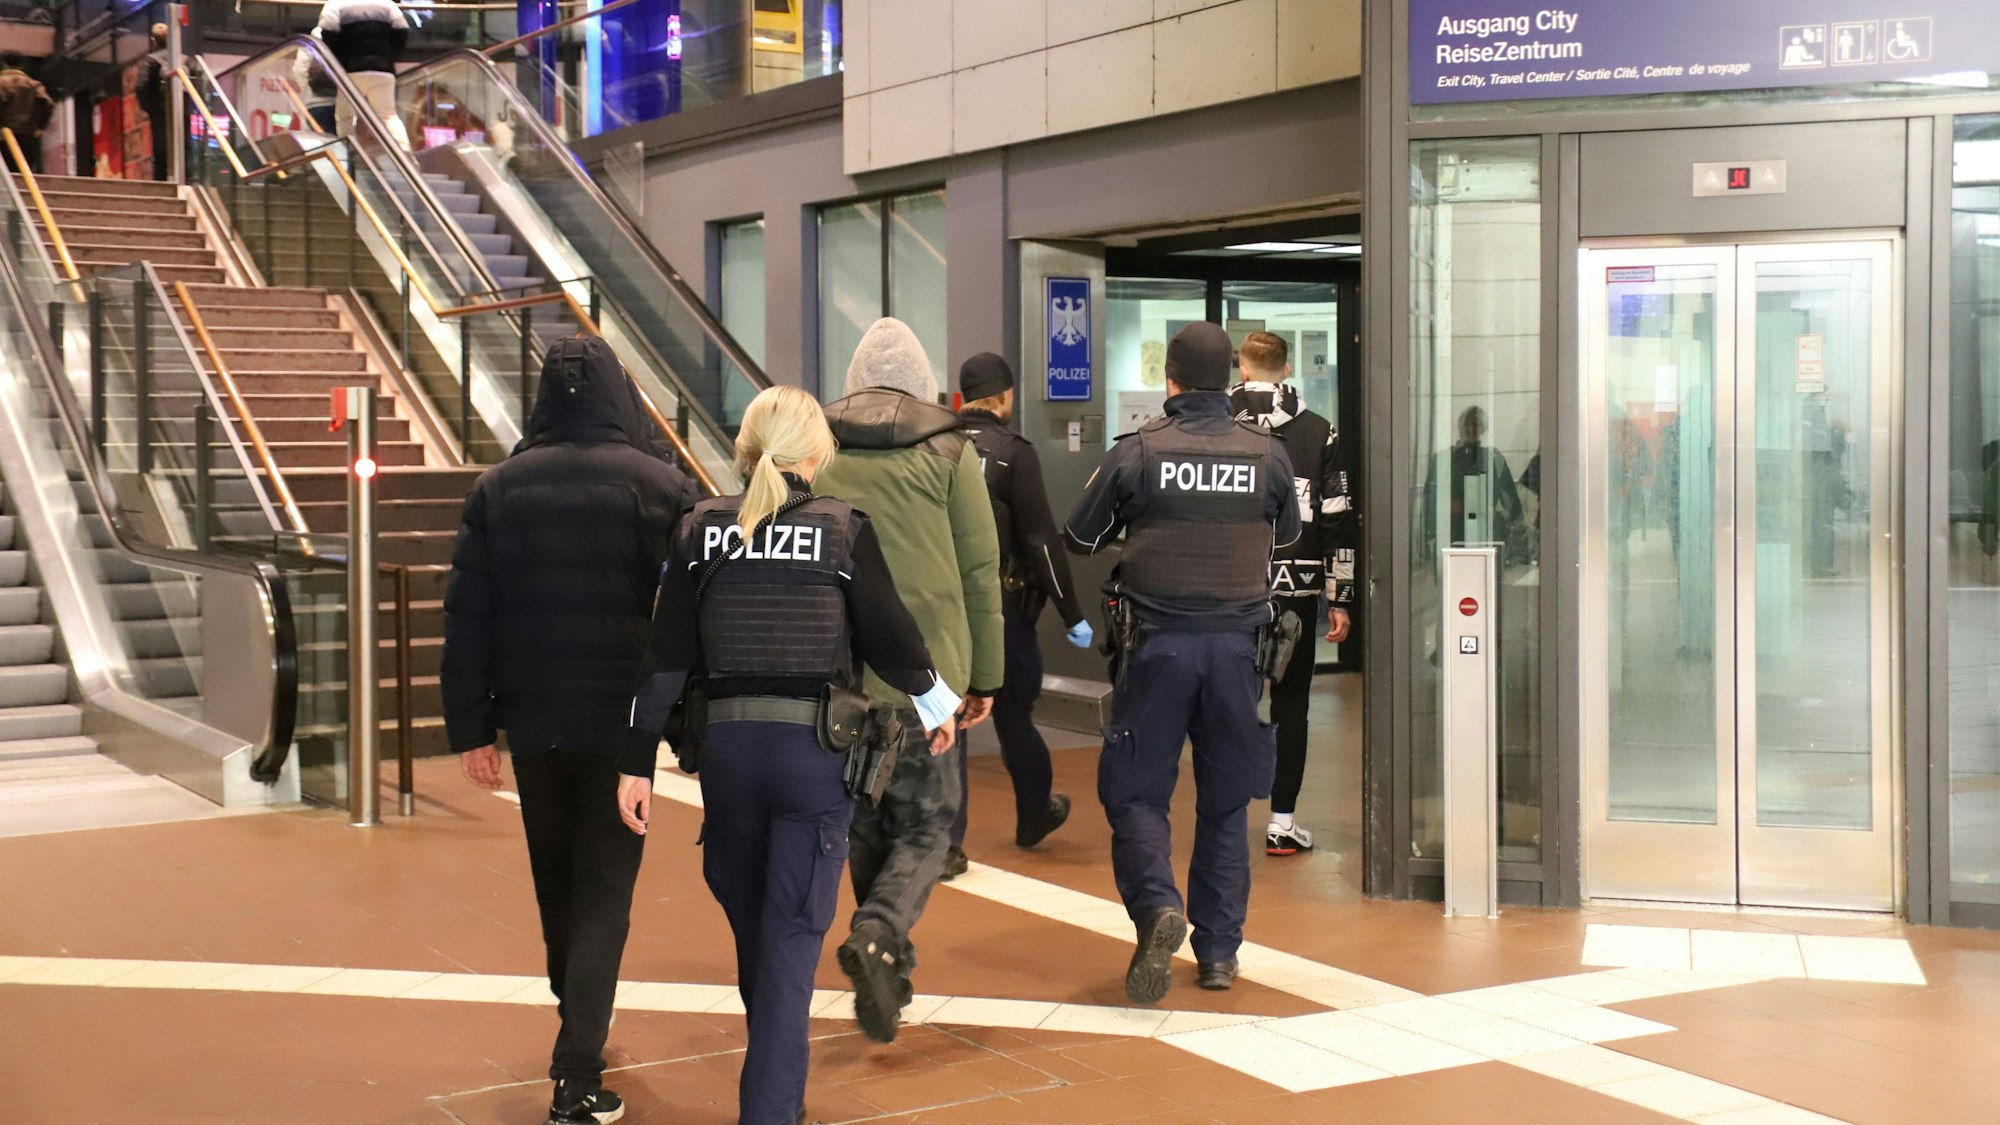 Im Siegburger Bahnhof vor den Treppen und Rolltreppen und neben dem Aufzug gehen zwei uniformierte Beamte. Sie sind von hinten zu sehen, eine blonde Frau mit Pferdeschwanz und ein Beamter mit Mütze begleiten drei Männer, die Kapuzenjacken tragen.